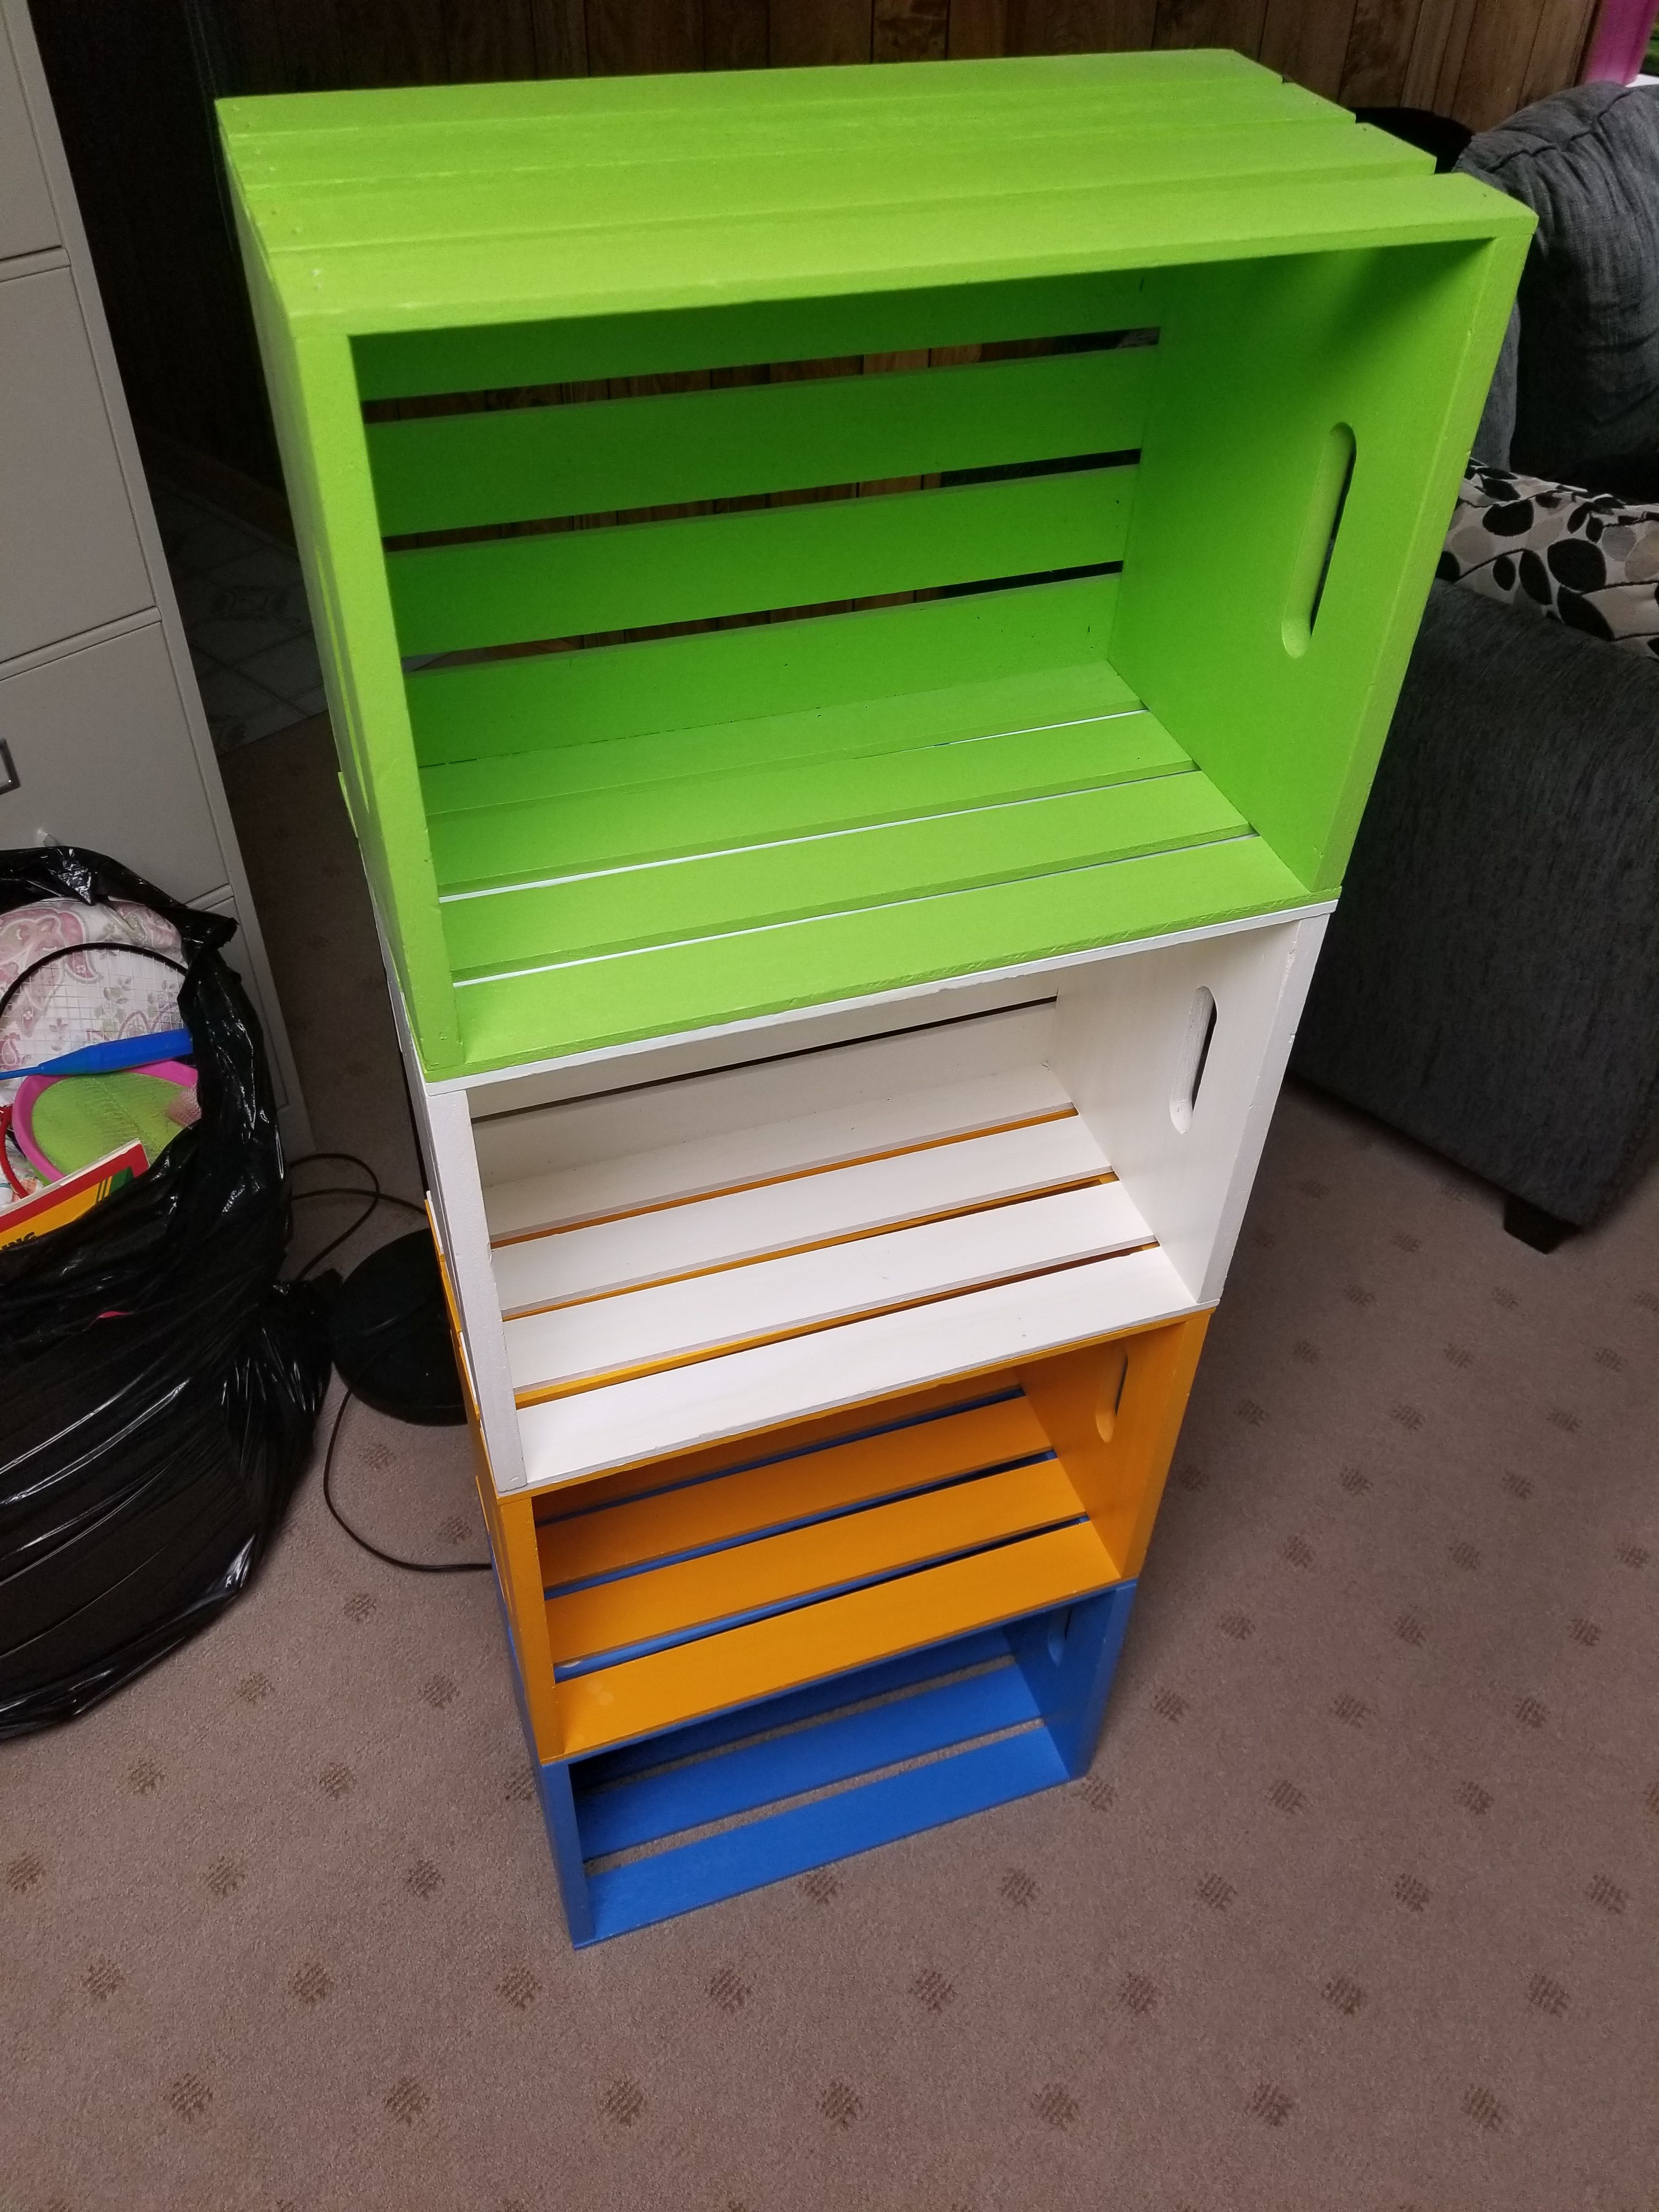 Craft crate shelf or toy bin